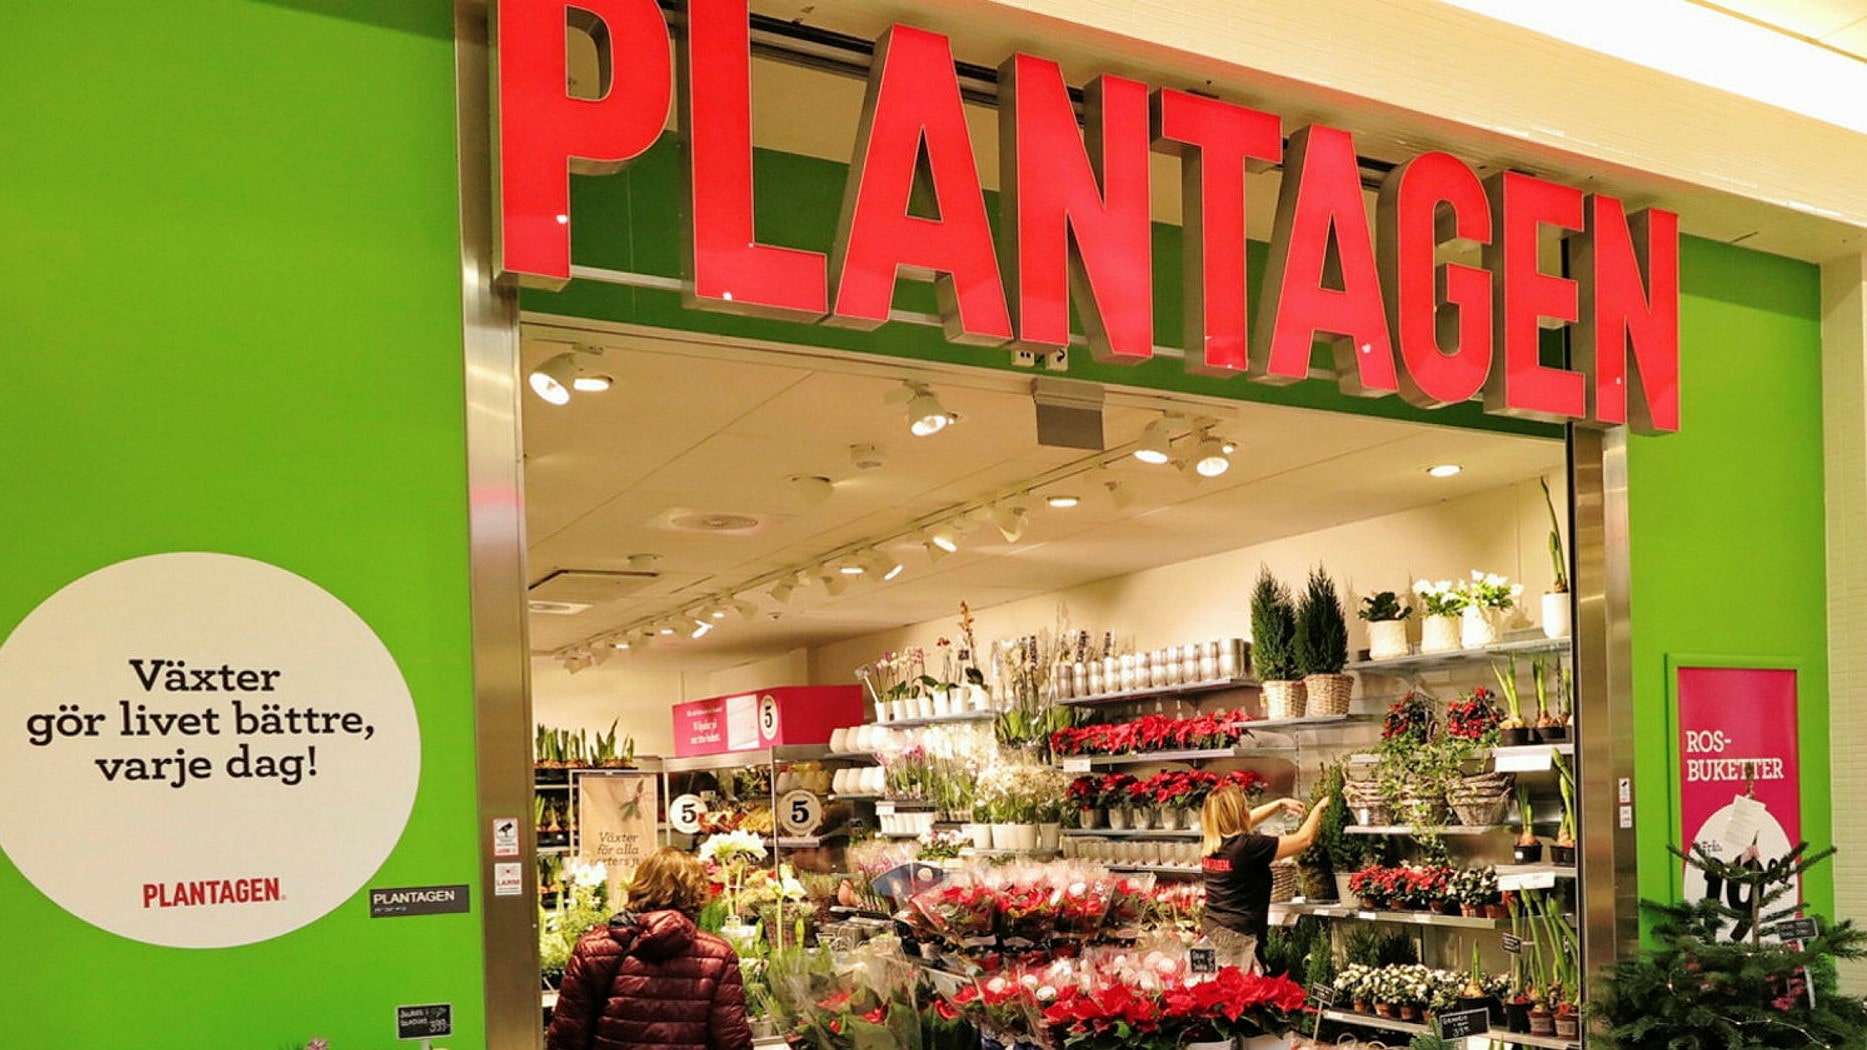 Svenska Plantagen fortsätter att visa förbättrat resultat - Market